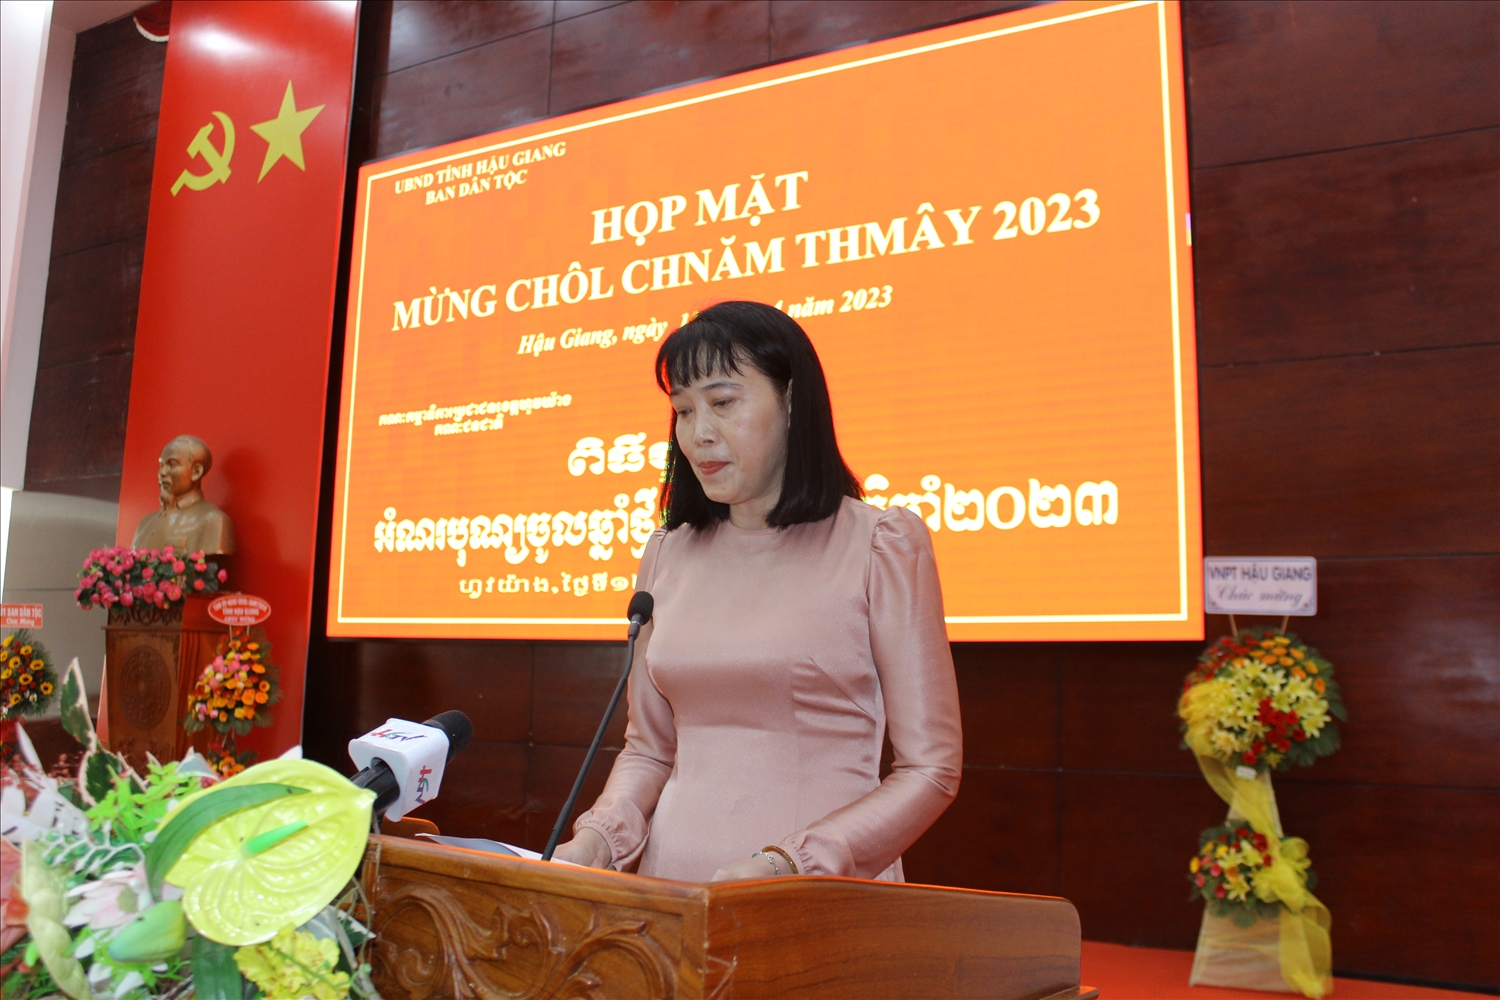 Bà Hồ Thu Ánh, Phó Chủ tịch UBND tỉnh phát biểu tại buổi họp mặt mừng Chôl Chnăm Thmây 2023 